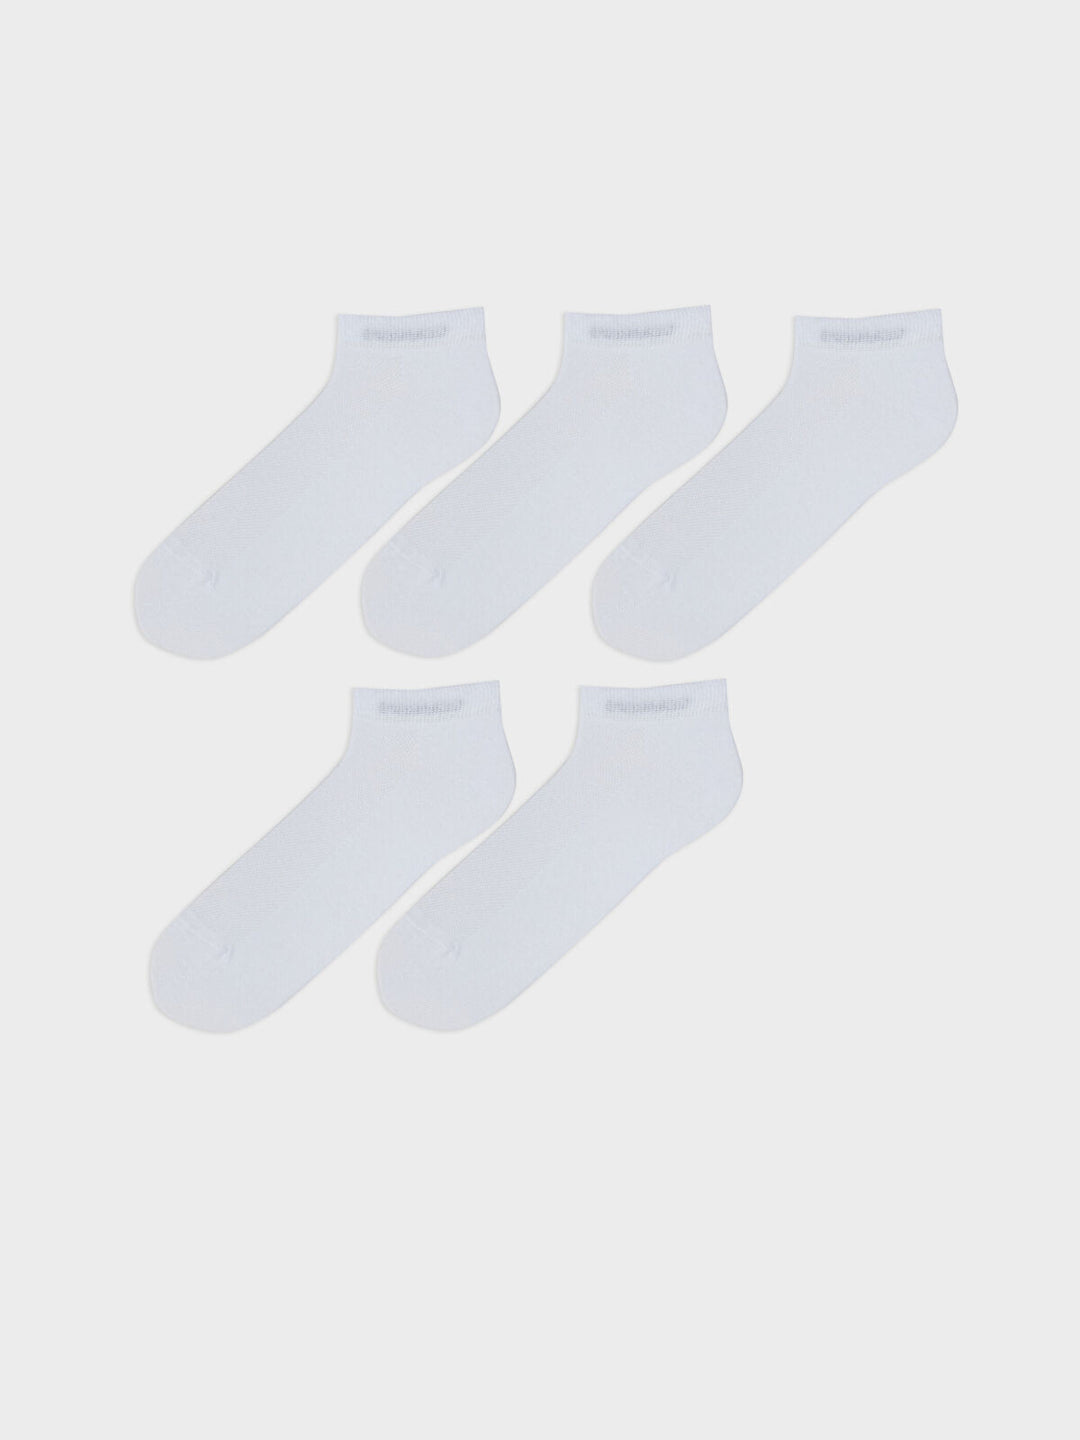 LCW ACCESSORIES Men's Booties Socks 5-pack